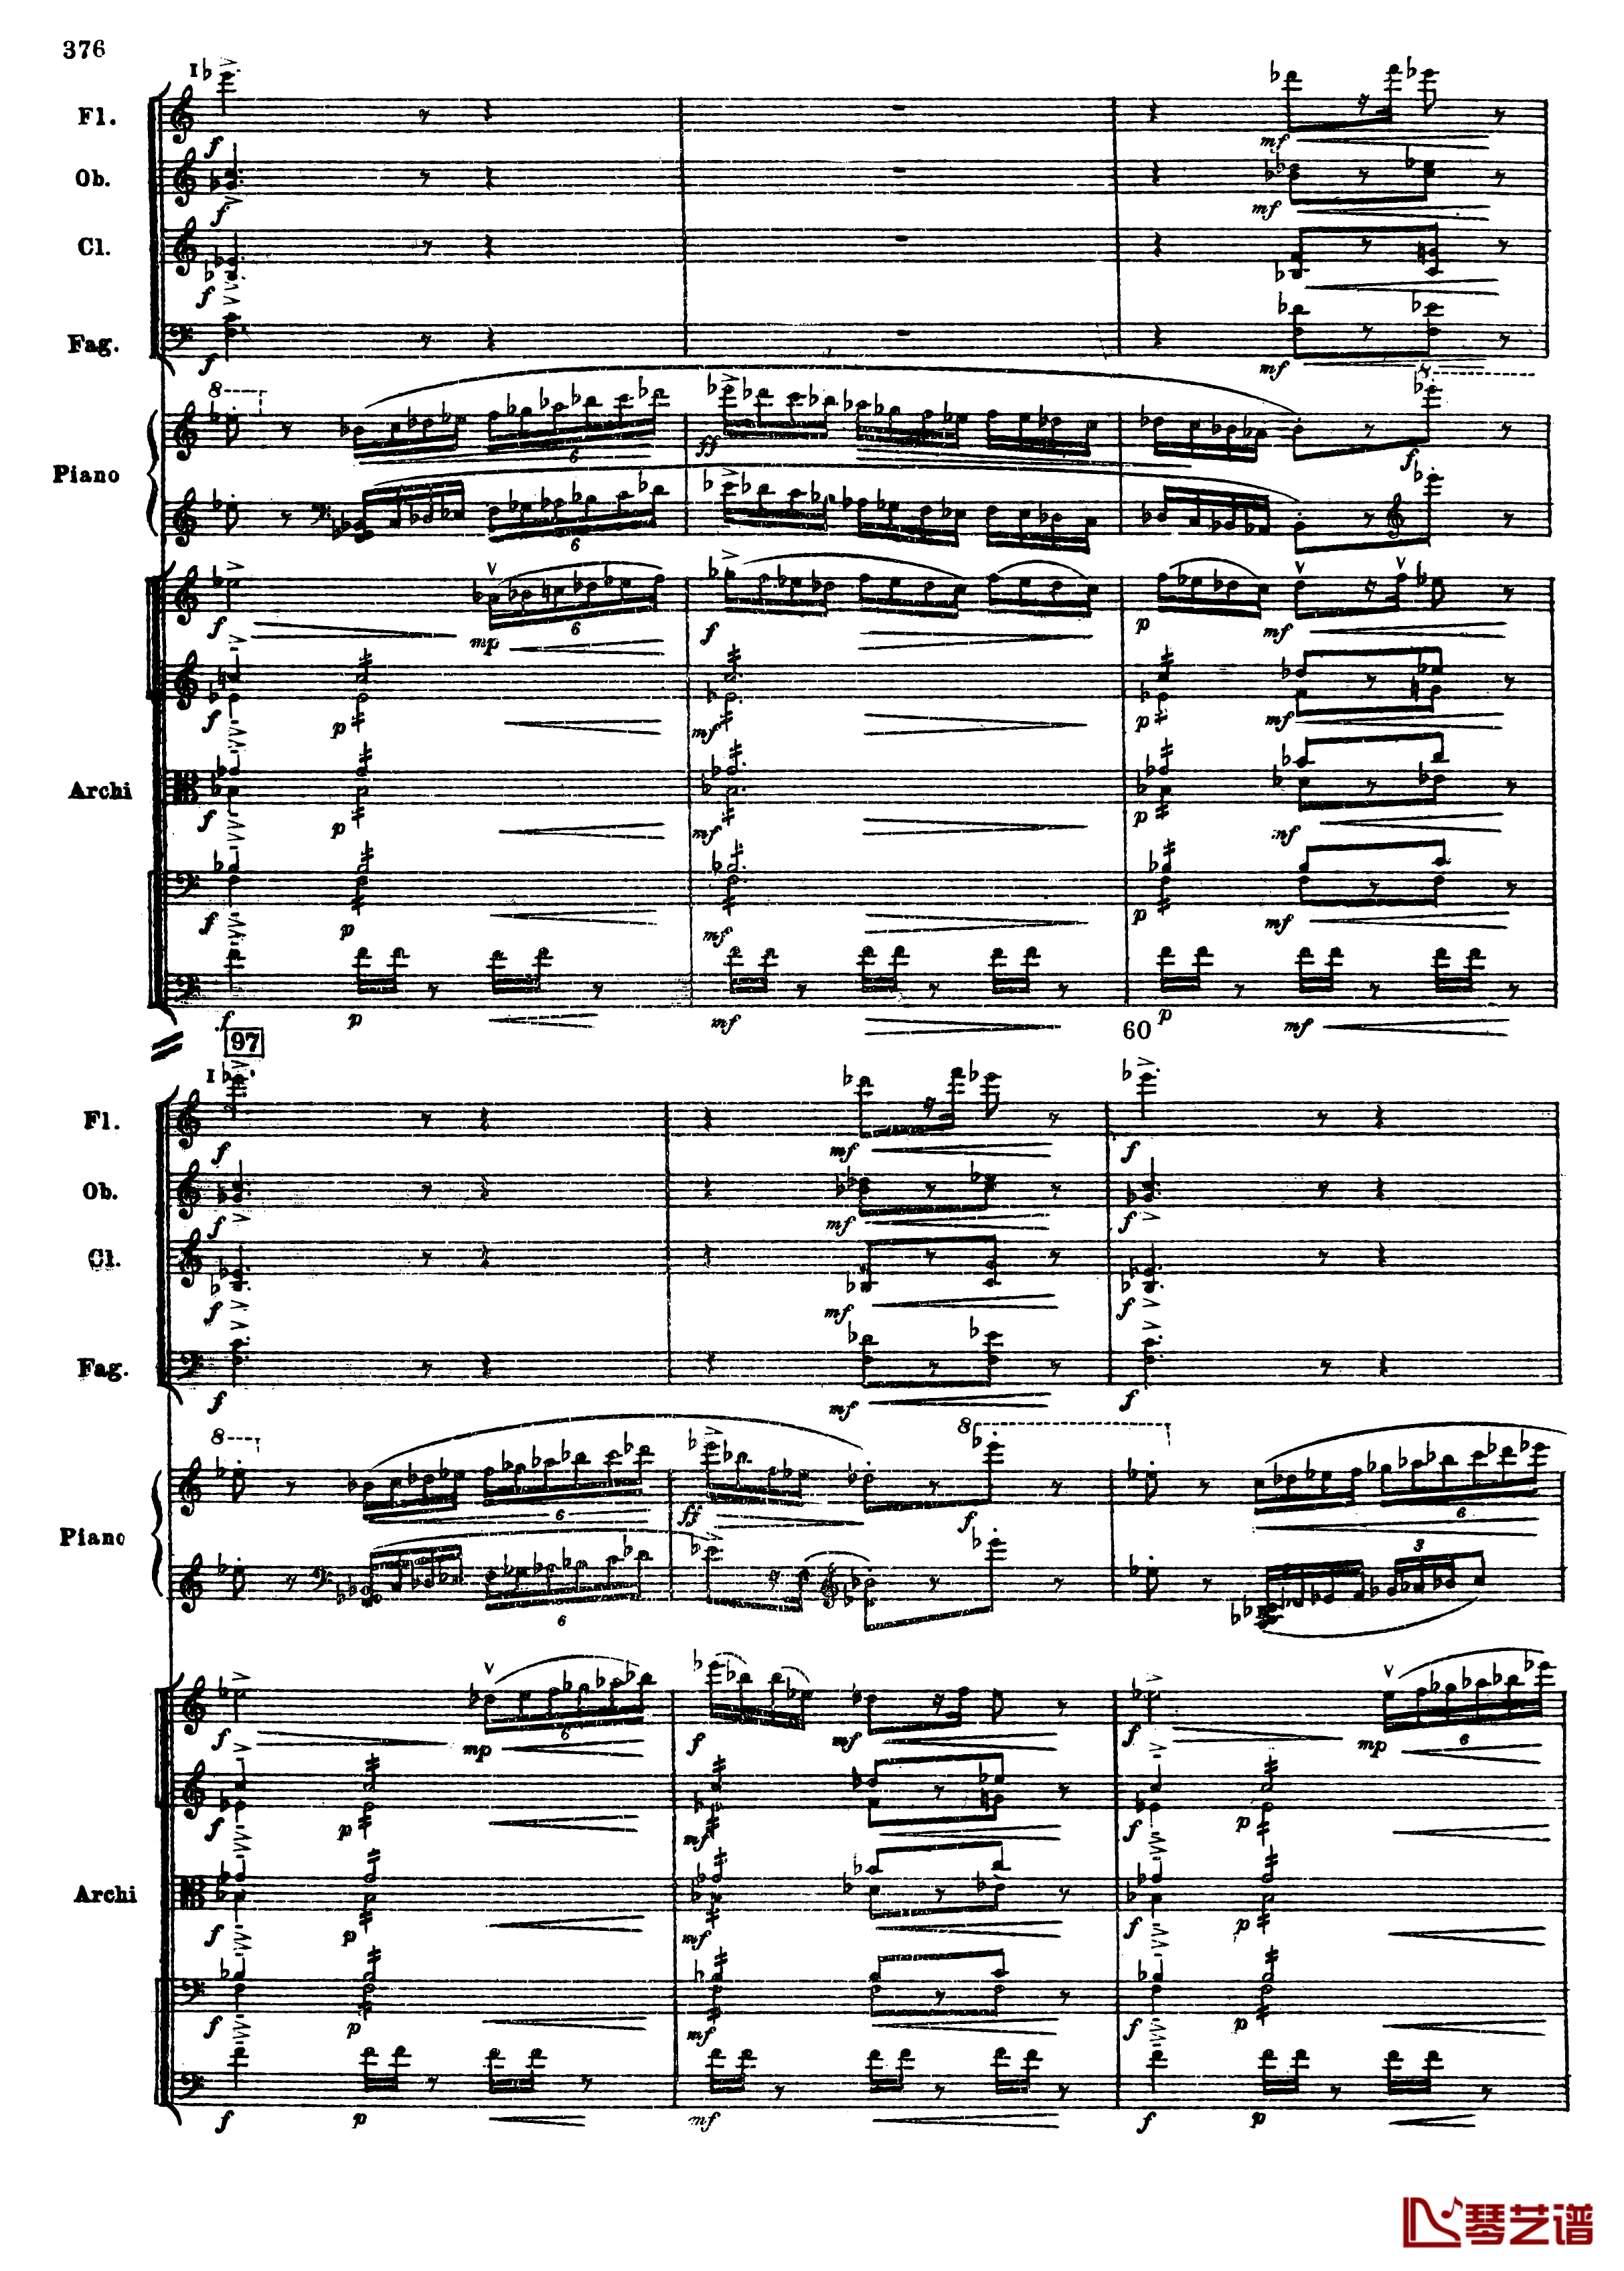 普罗科菲耶夫第三钢琴协奏曲钢琴谱-总谱-普罗科非耶夫108